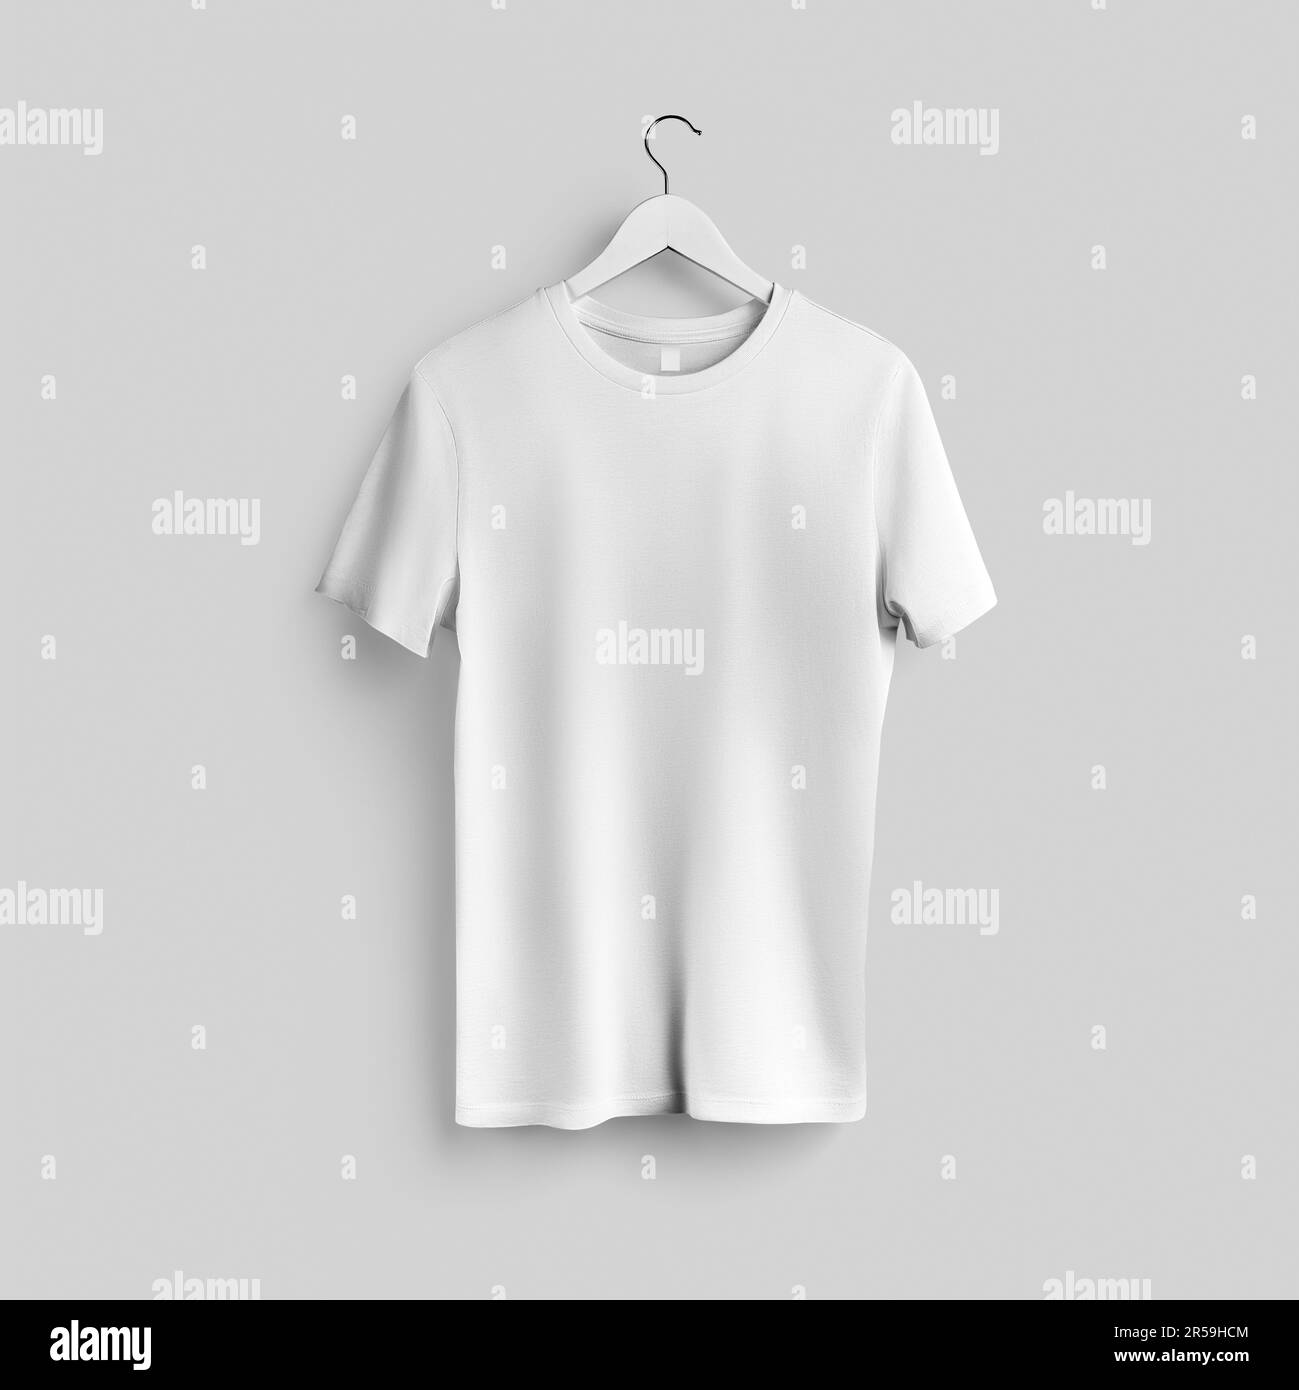 Modisches weißes T-Shirt-Modell auf einem Kleiderbügel, strukturierte Kleidung mit Etikett, Rundhalsausschnitt, isoliert auf Hintergrund, Vorderansicht. Unisex-Shirt-Vorlage für Beschreibung Stockfoto